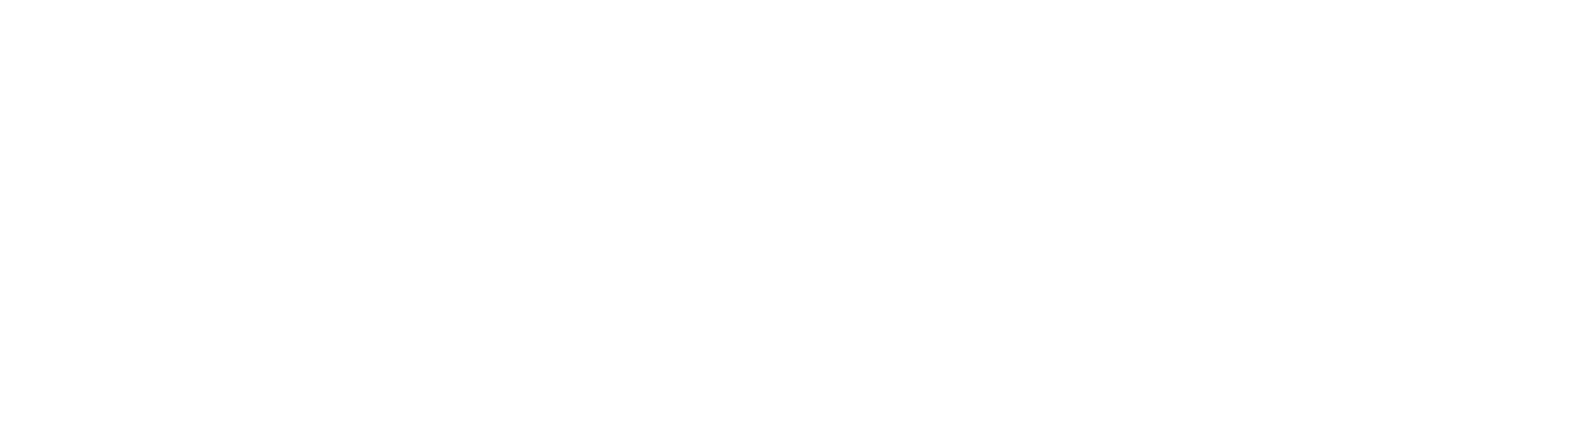 Zevra Therapeutics logo grand pour les fonds sombres (PNG transparent)